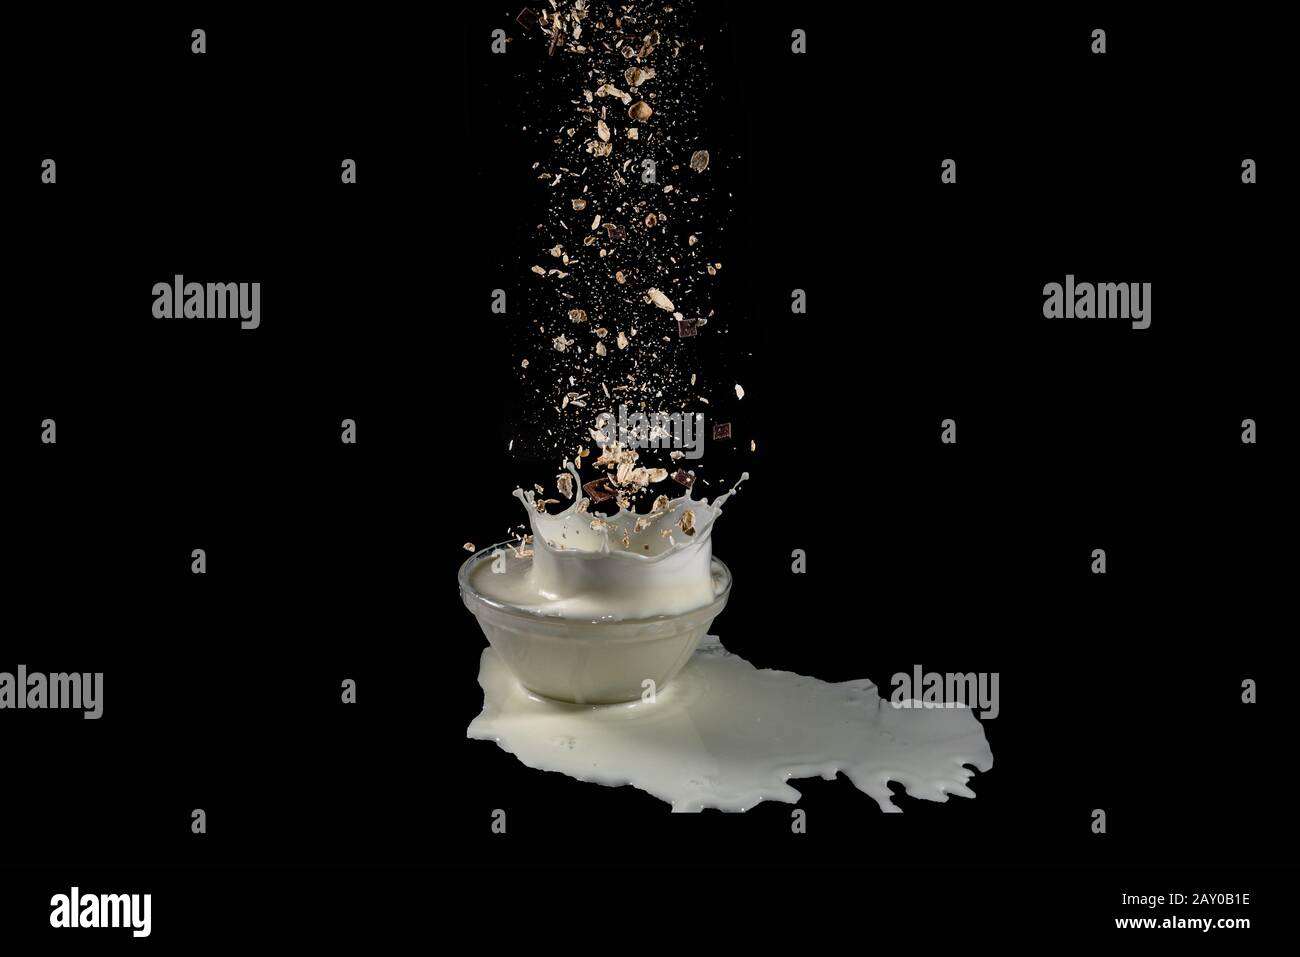 i cereali che si levitano cadono in una ciotola con il latte schizzato - immagine ad alta velocità Foto Stock